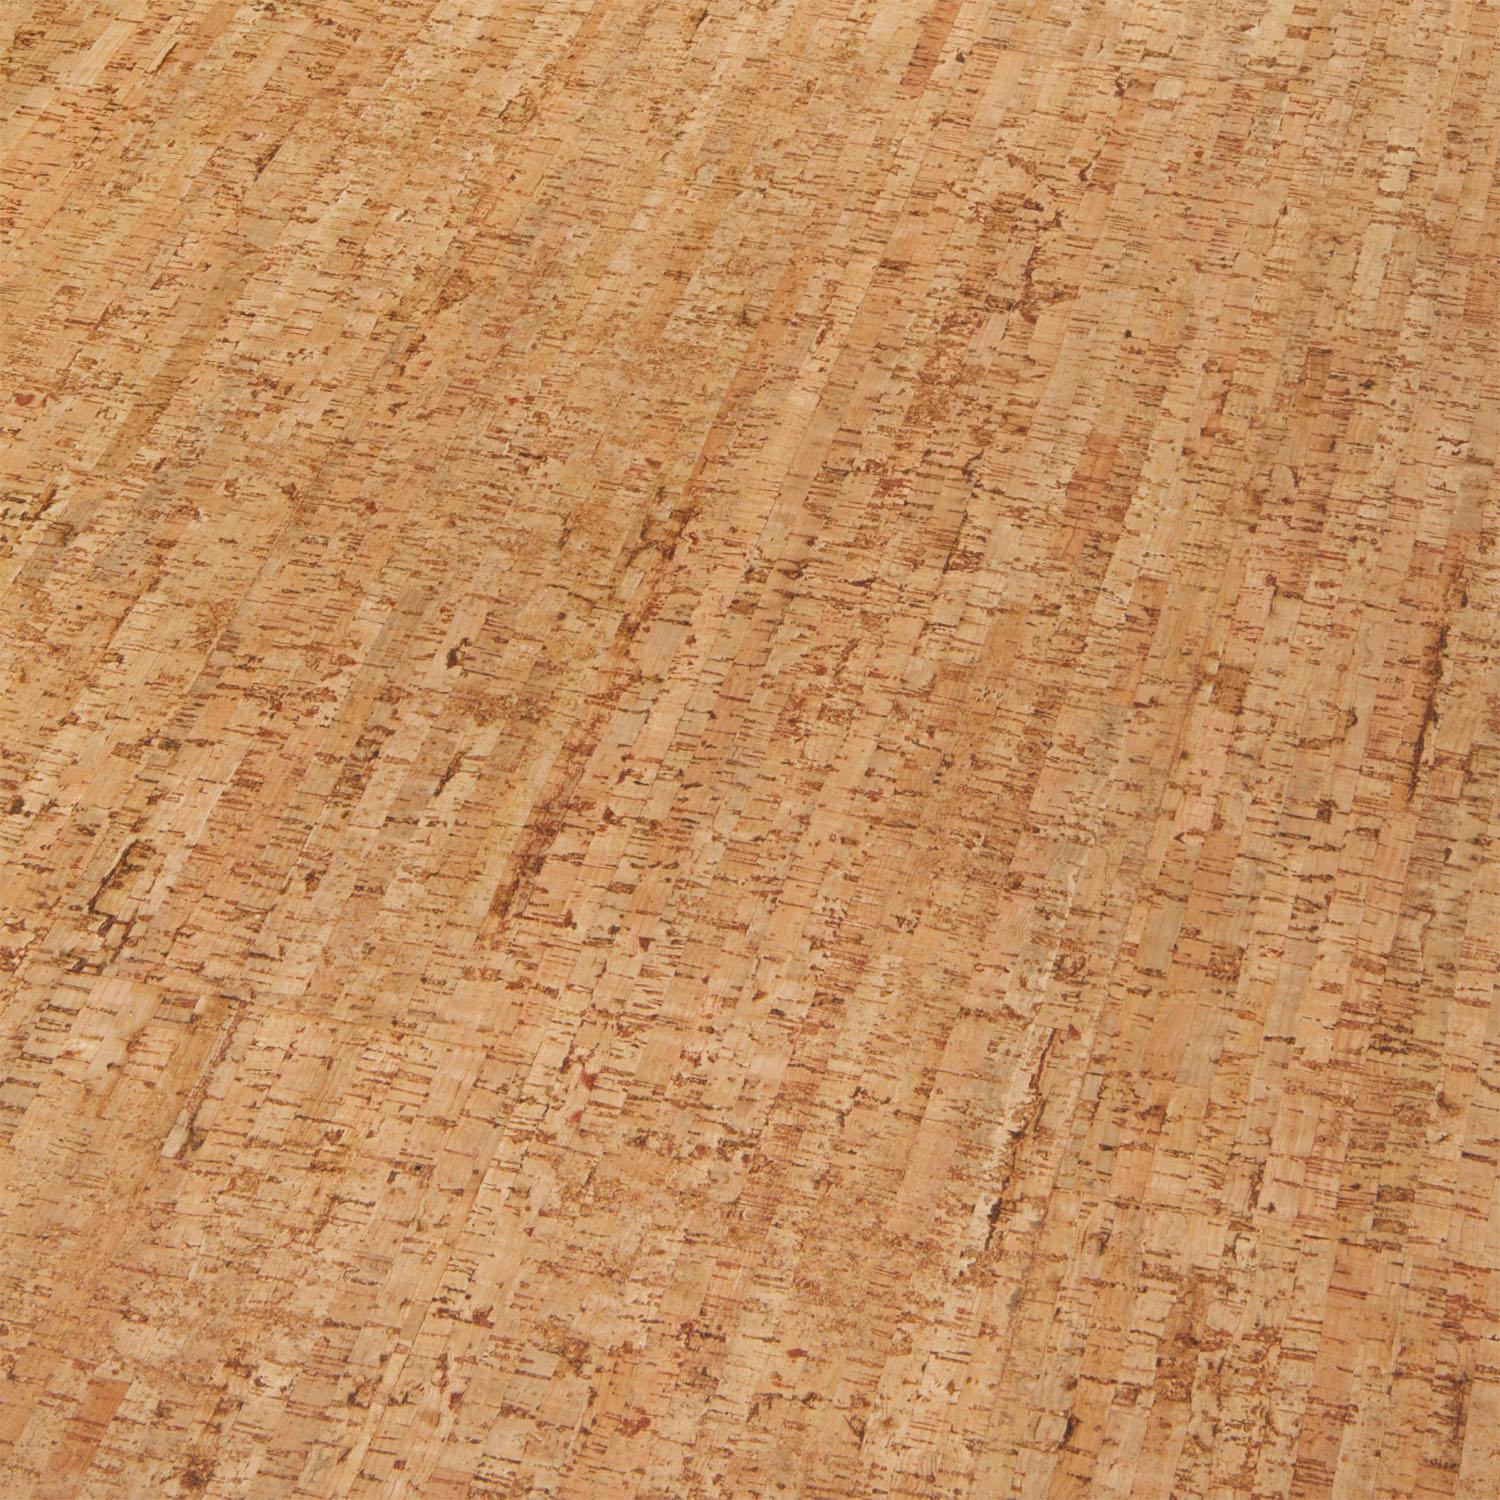 WISE Waterproof Cork Flooring - Cork (TRACES NATURAL)